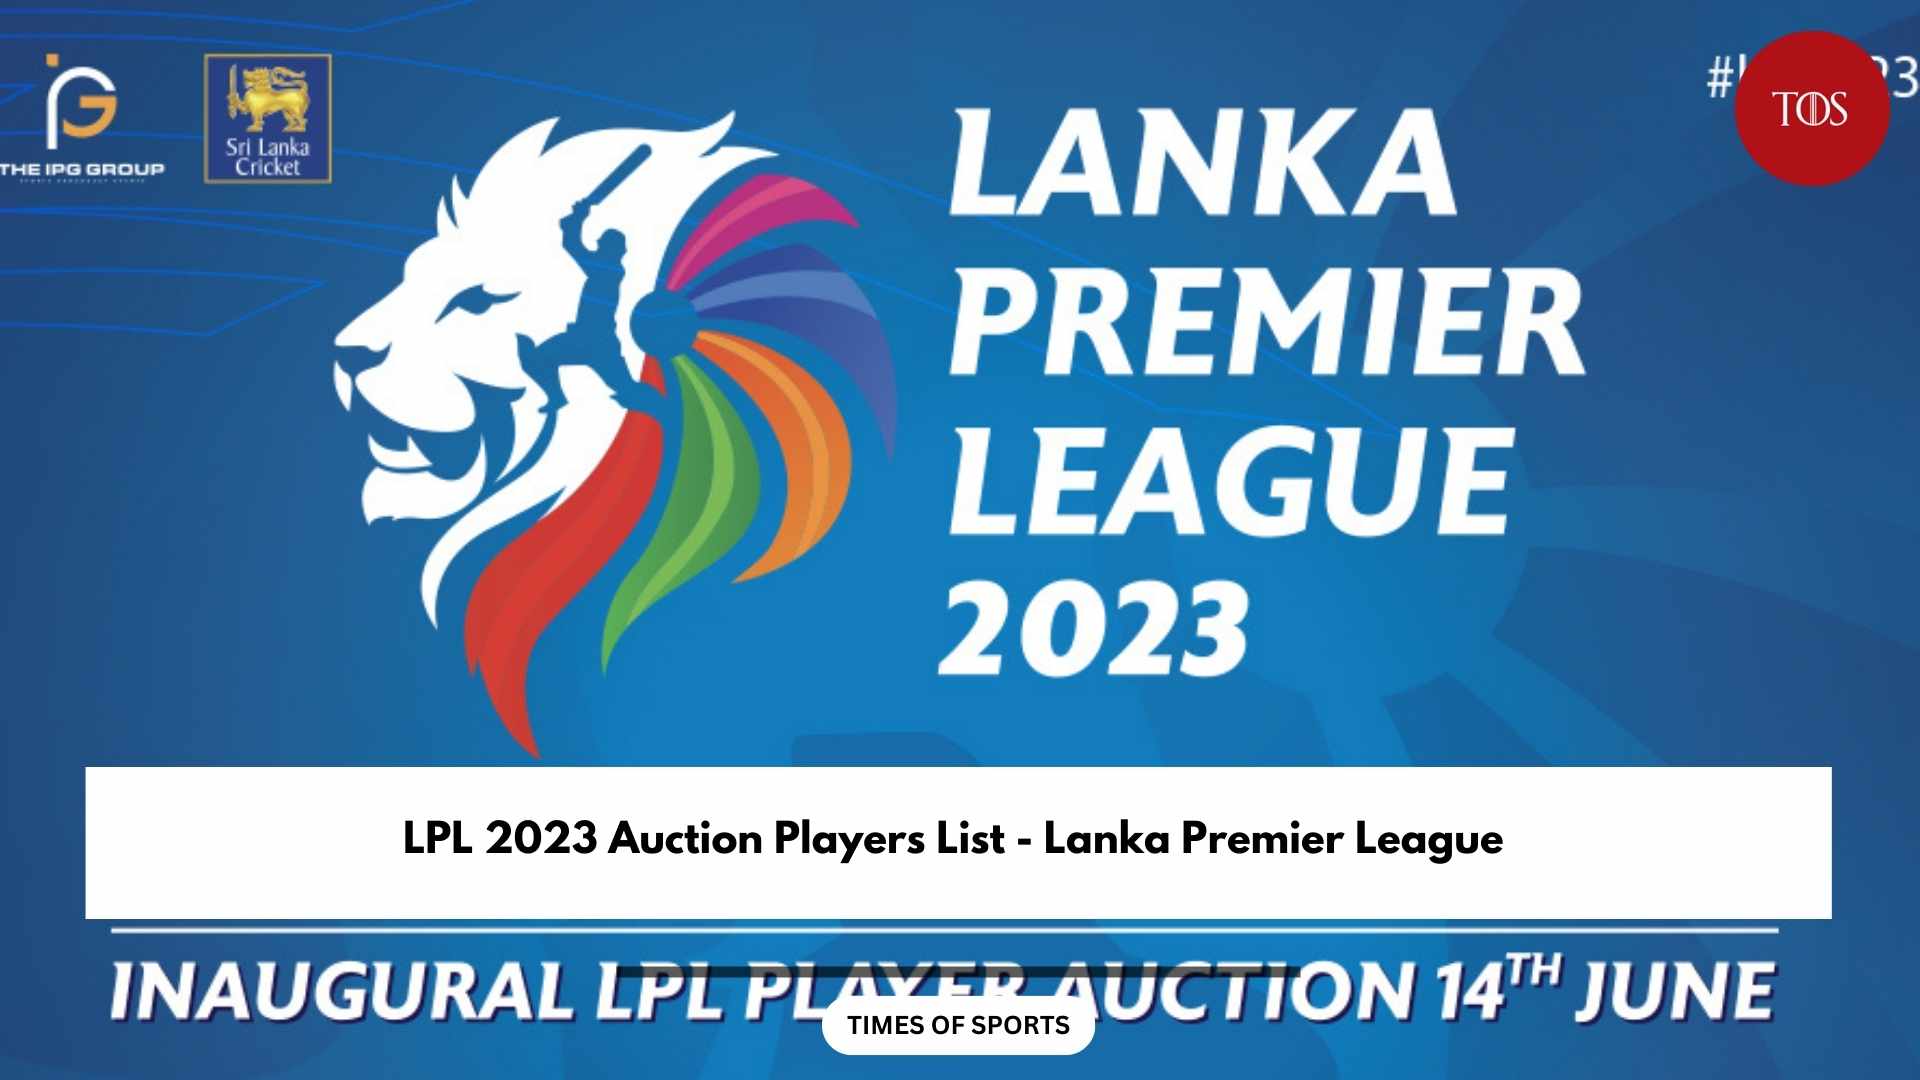 LPL 2023 Auction Players List Lanka Premier League